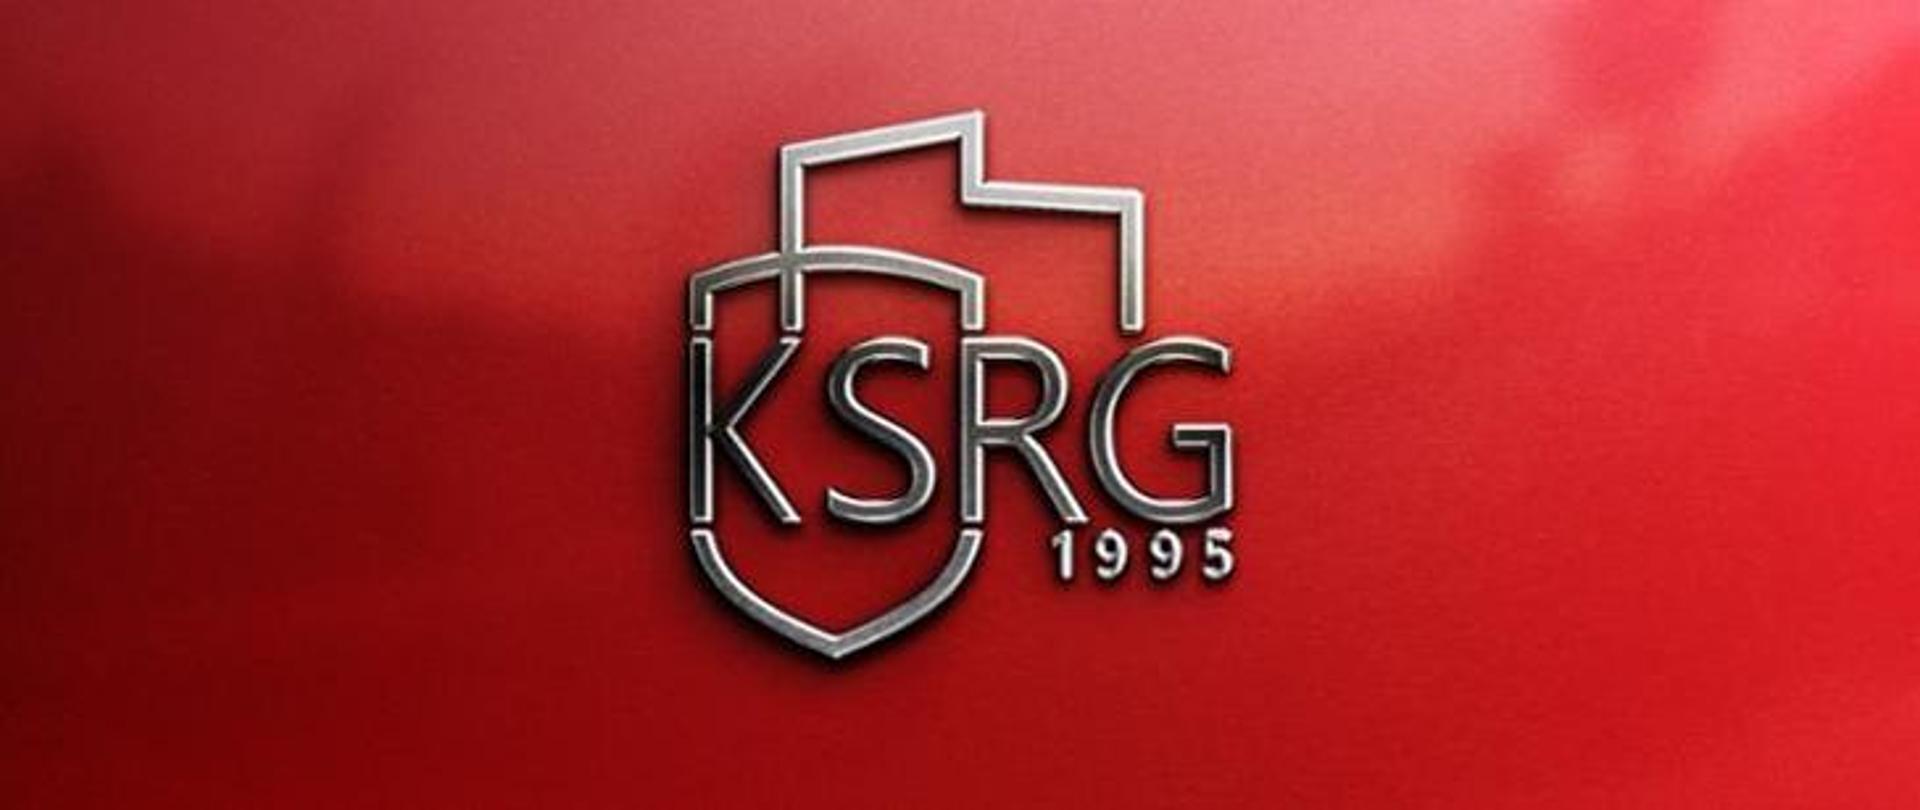 Wprowadzenie do stosowania znaku KSRG - na zdjęciu napis ksrg na czerwonym tle